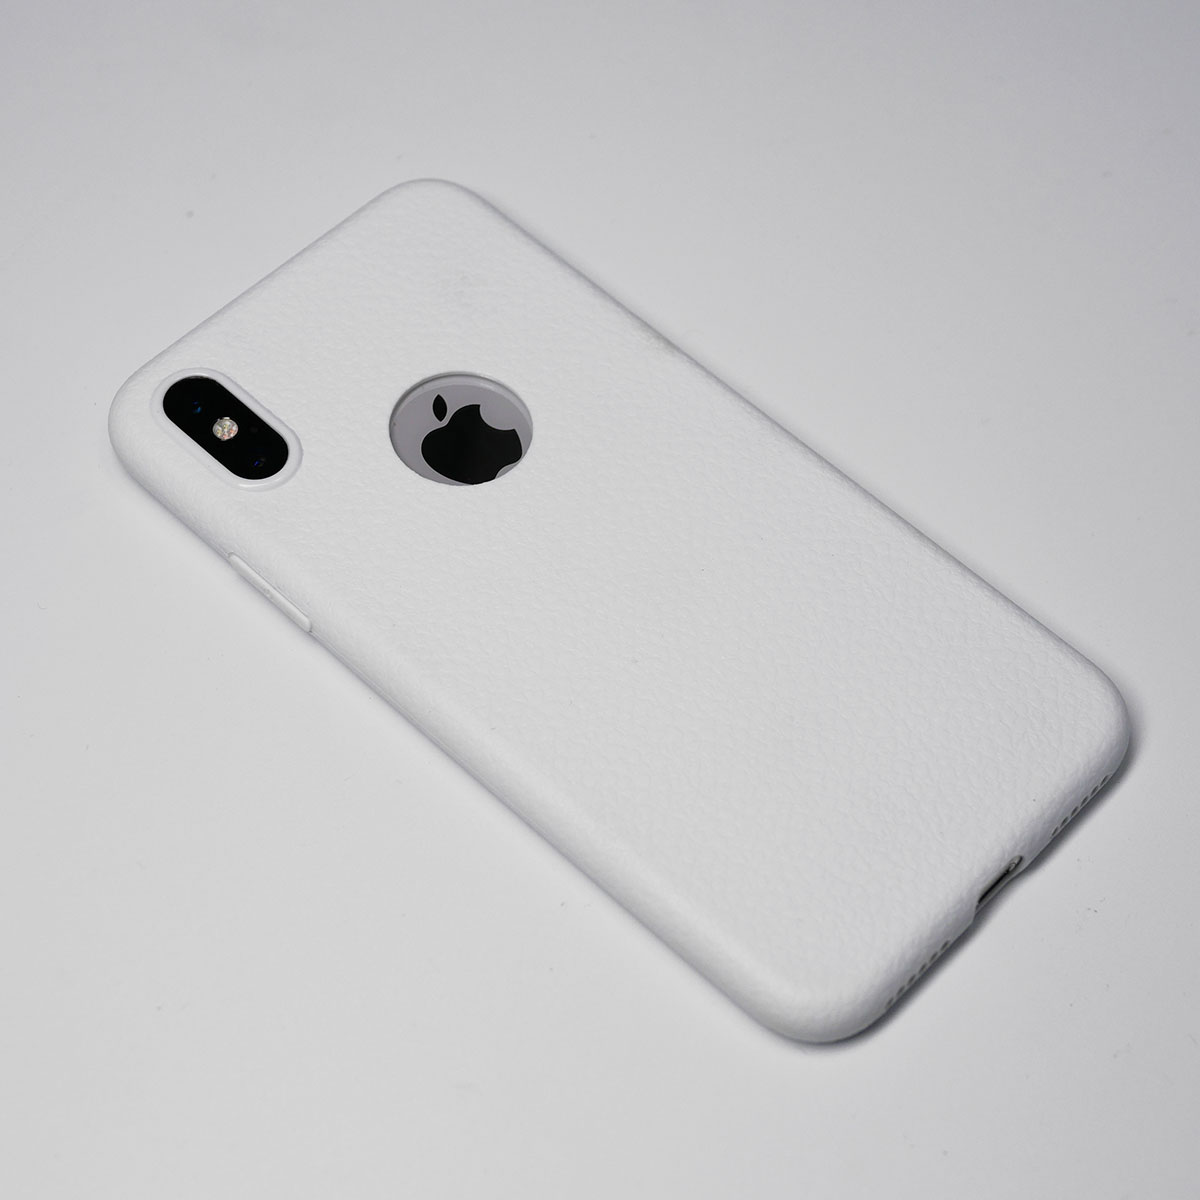 138097 เคส iPhone XS สีขาว
